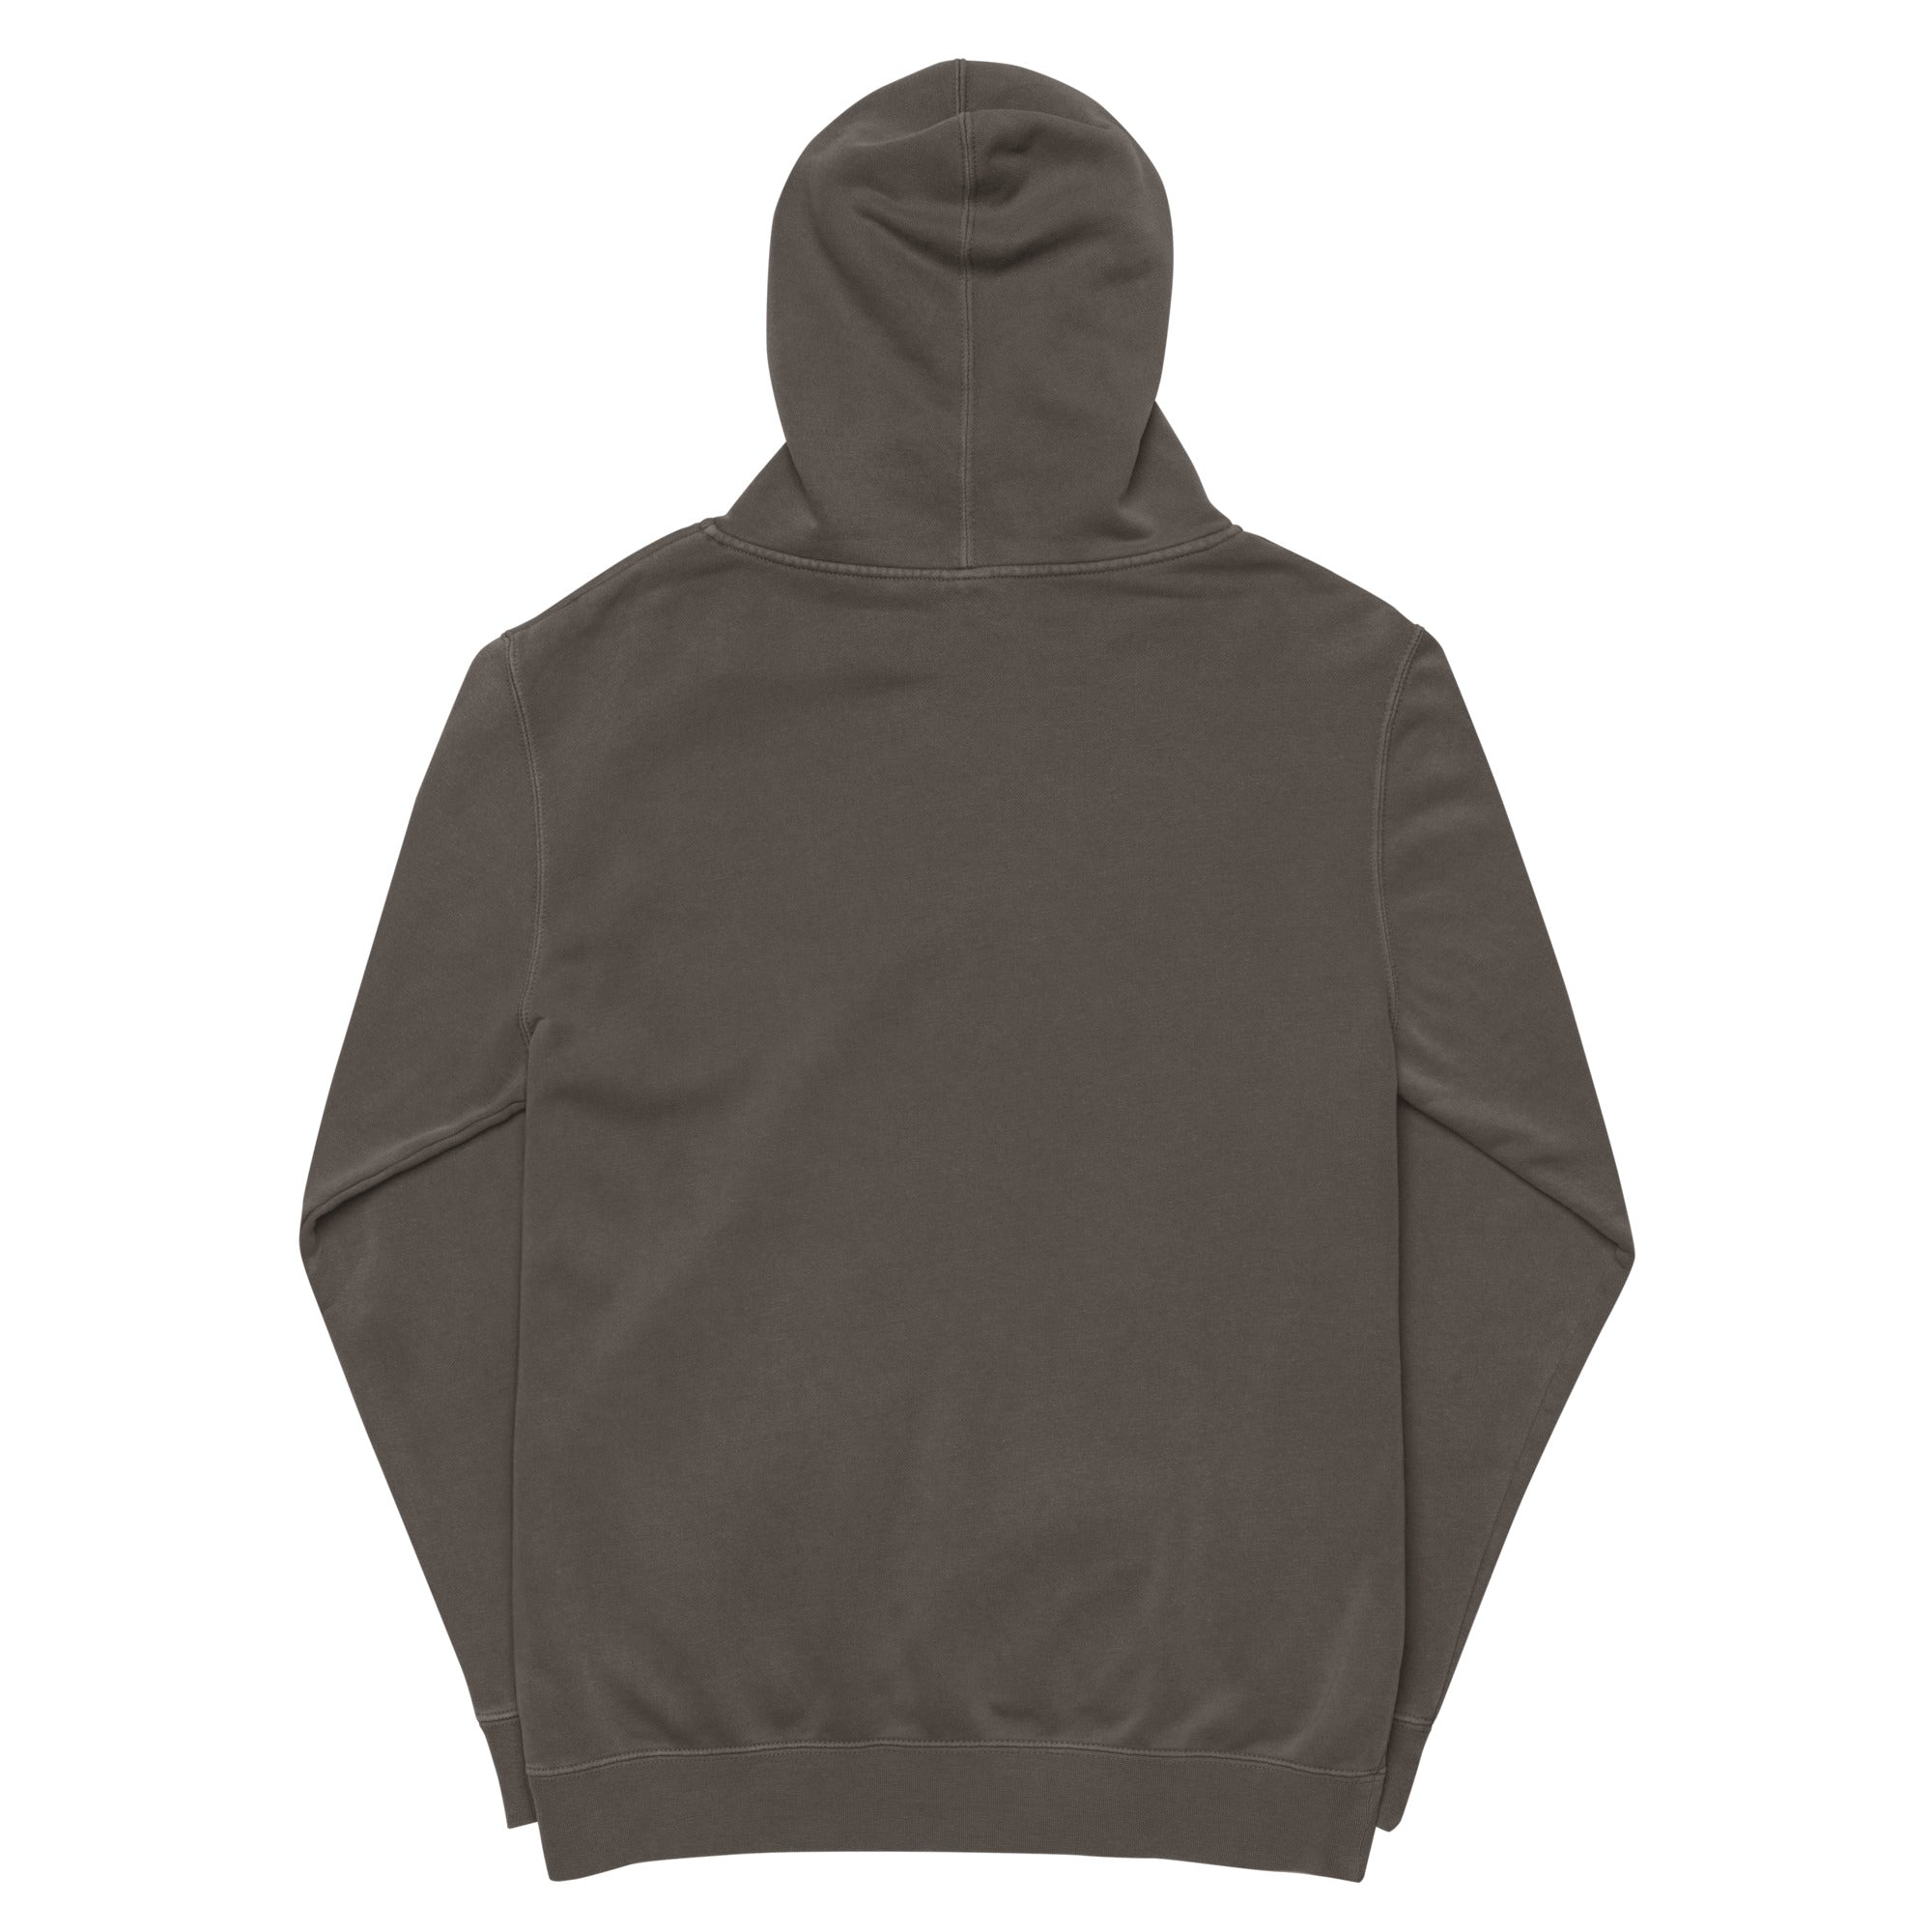 DieselDonlow hoodie